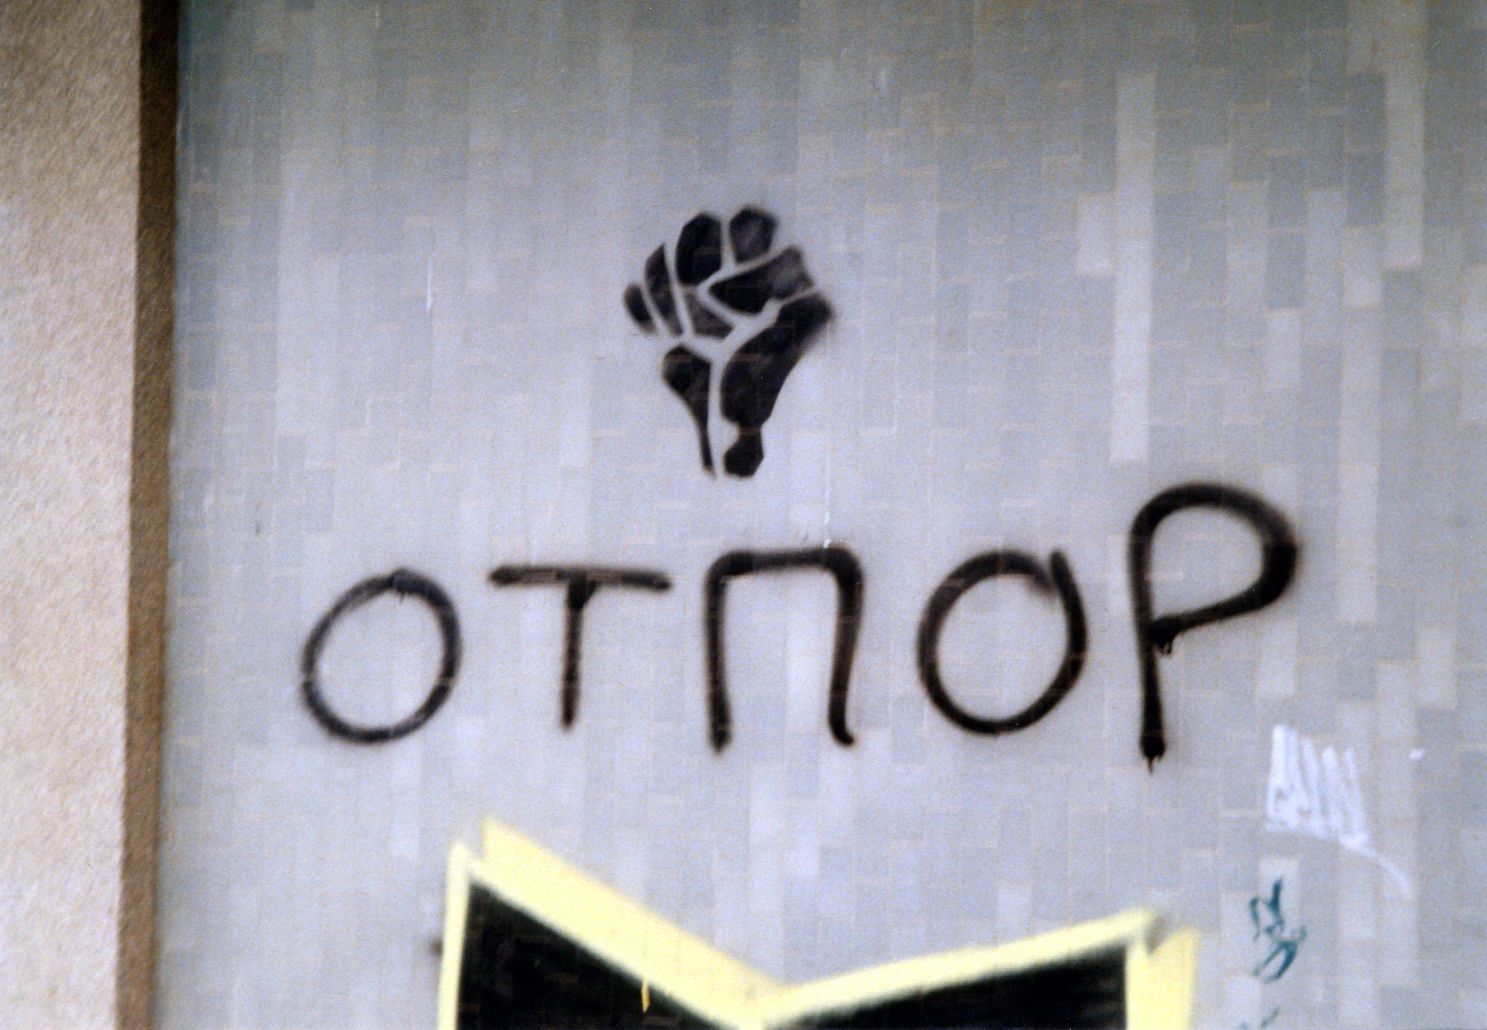 غرافيتي على الجدران لتثبيت شعار أوتبور كماركة تجارية للمقاومة